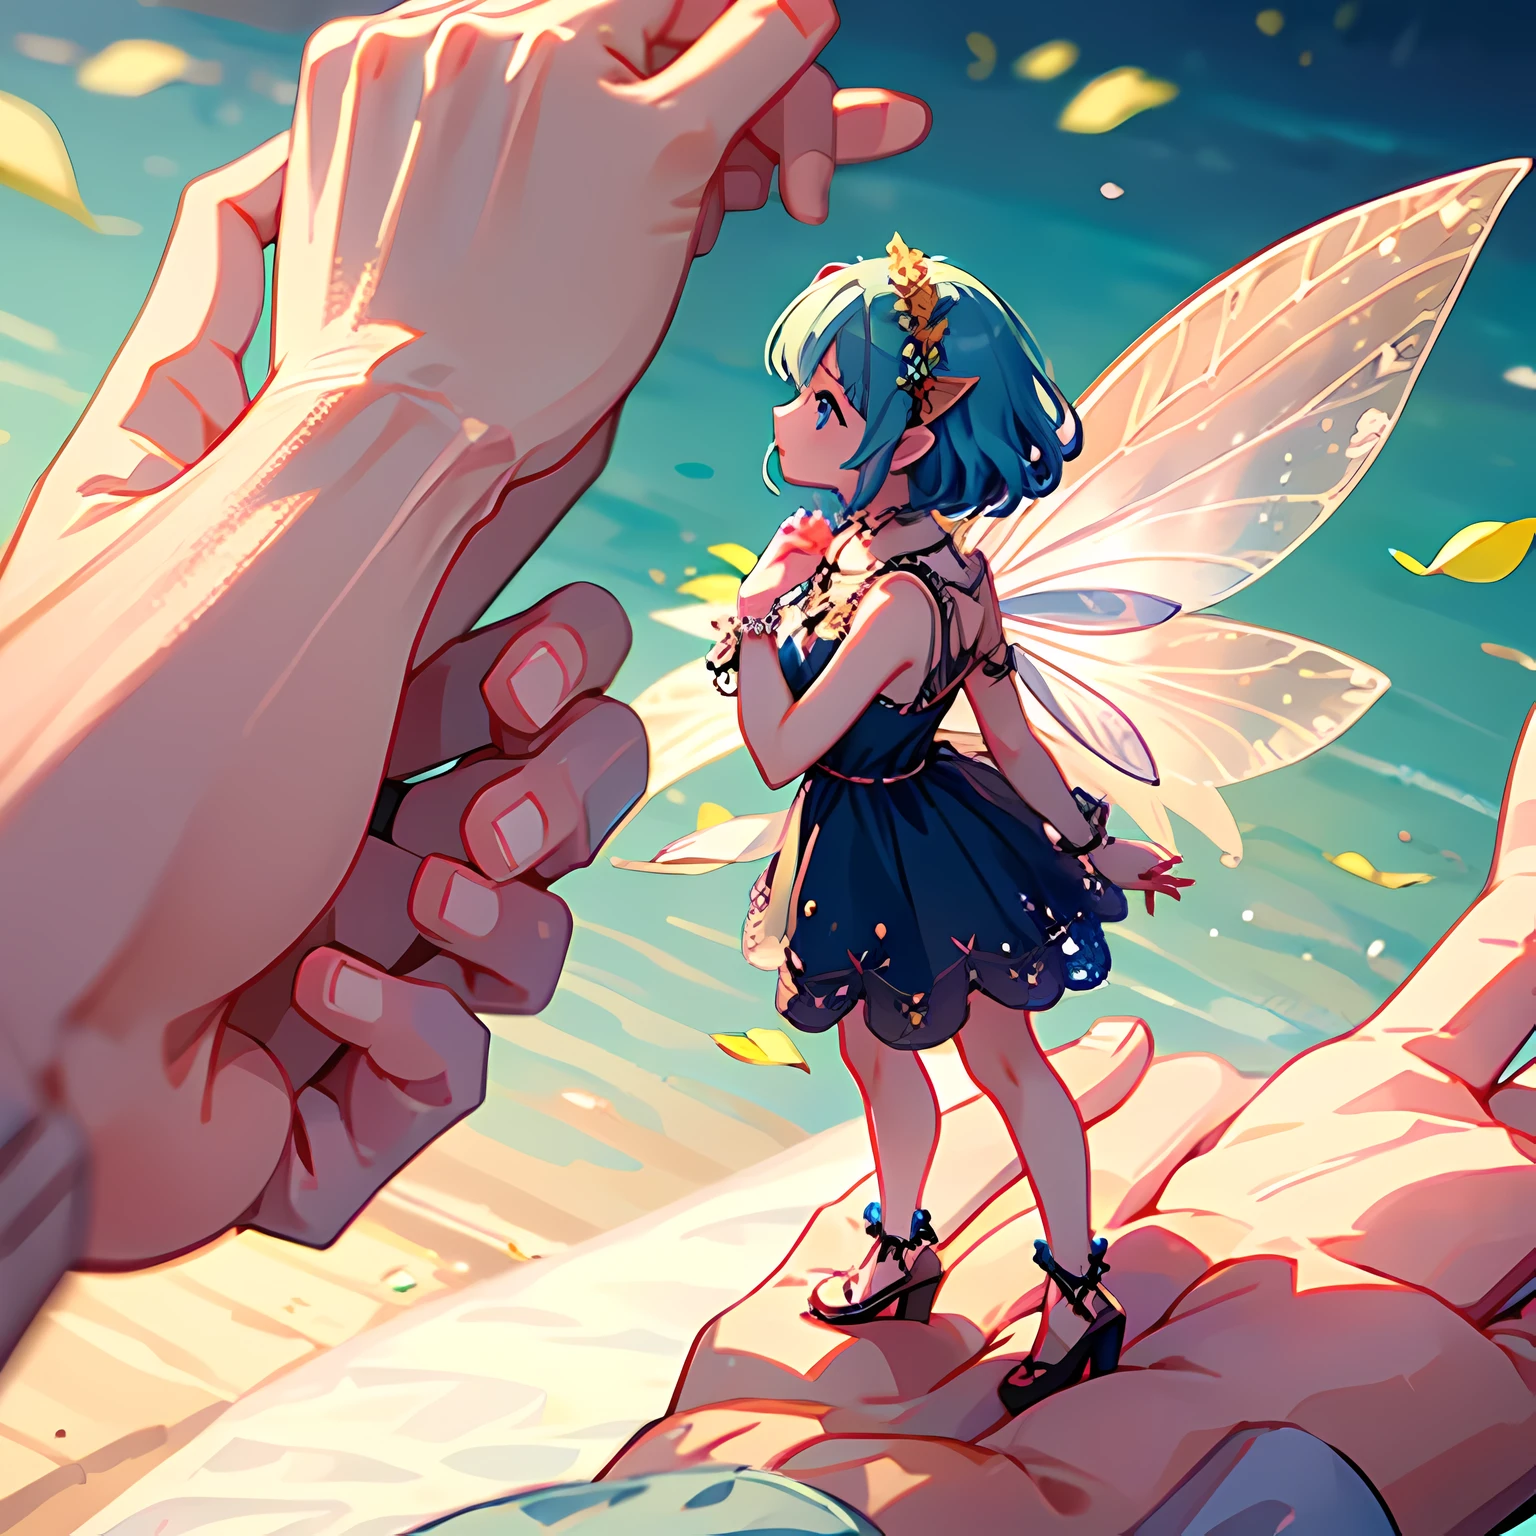 站在人類女孩手掌上的小仙女女孩. 仙女身上的小漂亮翅膀.